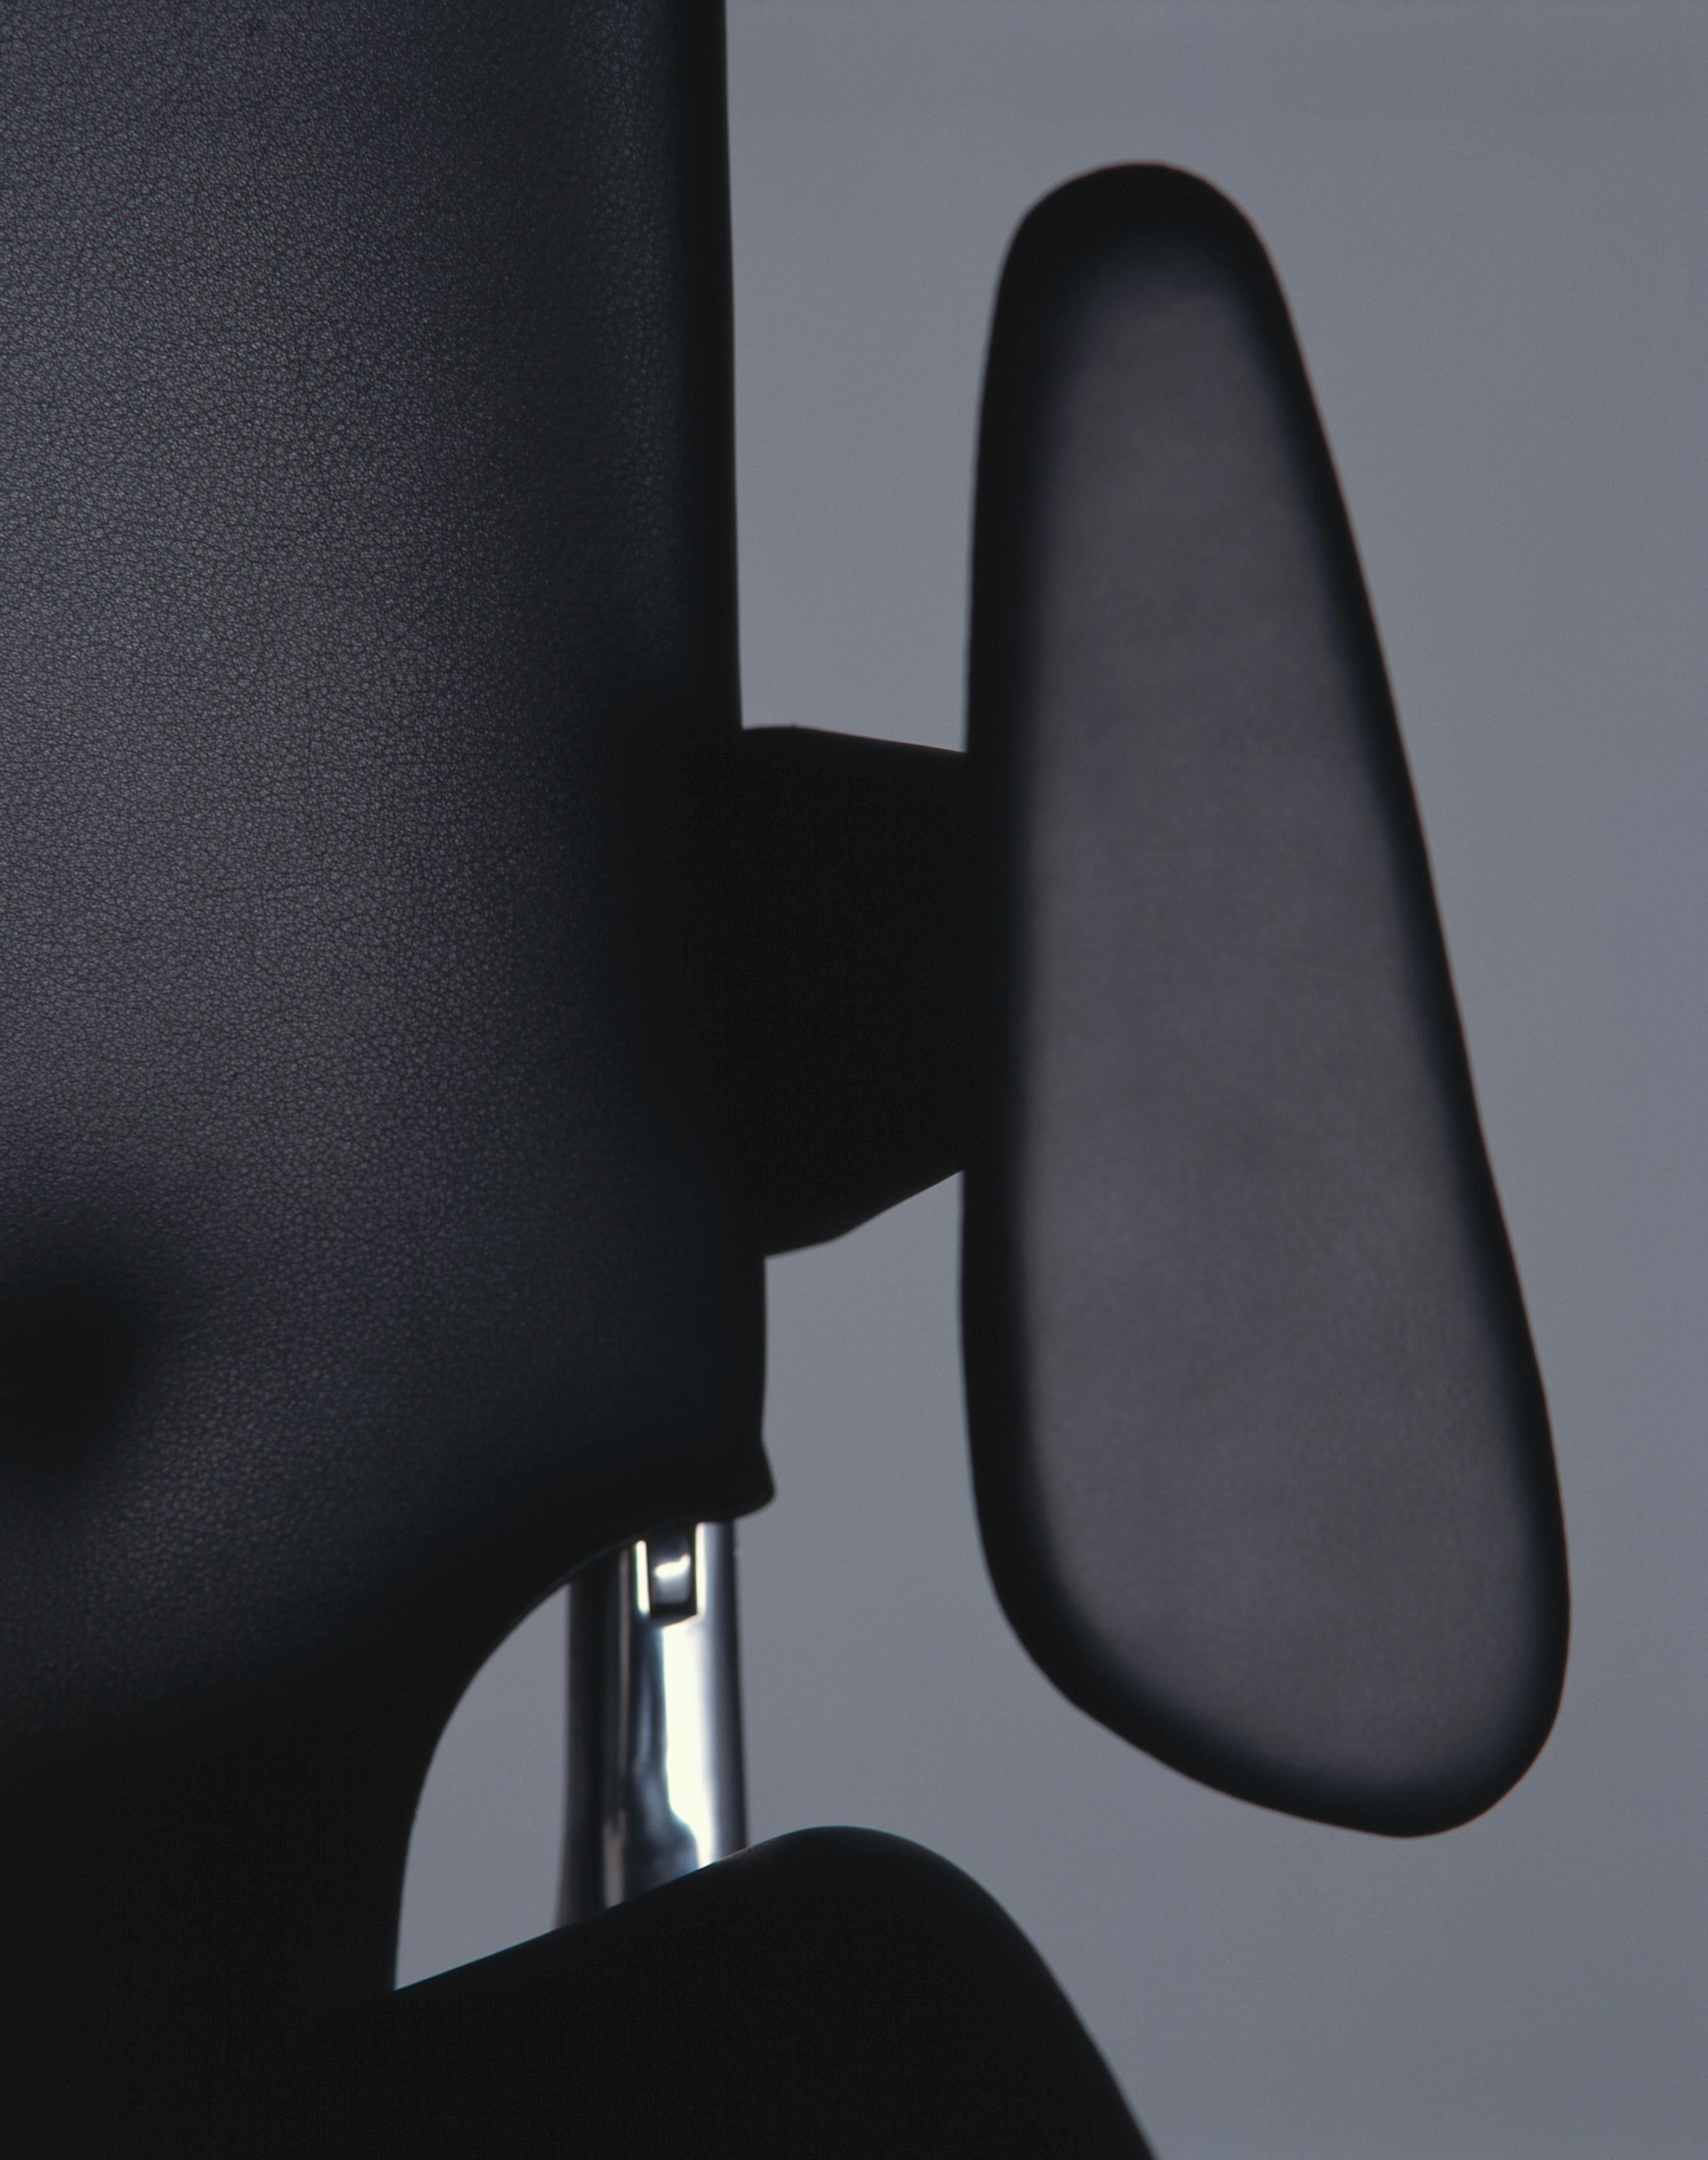 Vitra Meda Chair in Black Leather by Alberto Meda 1